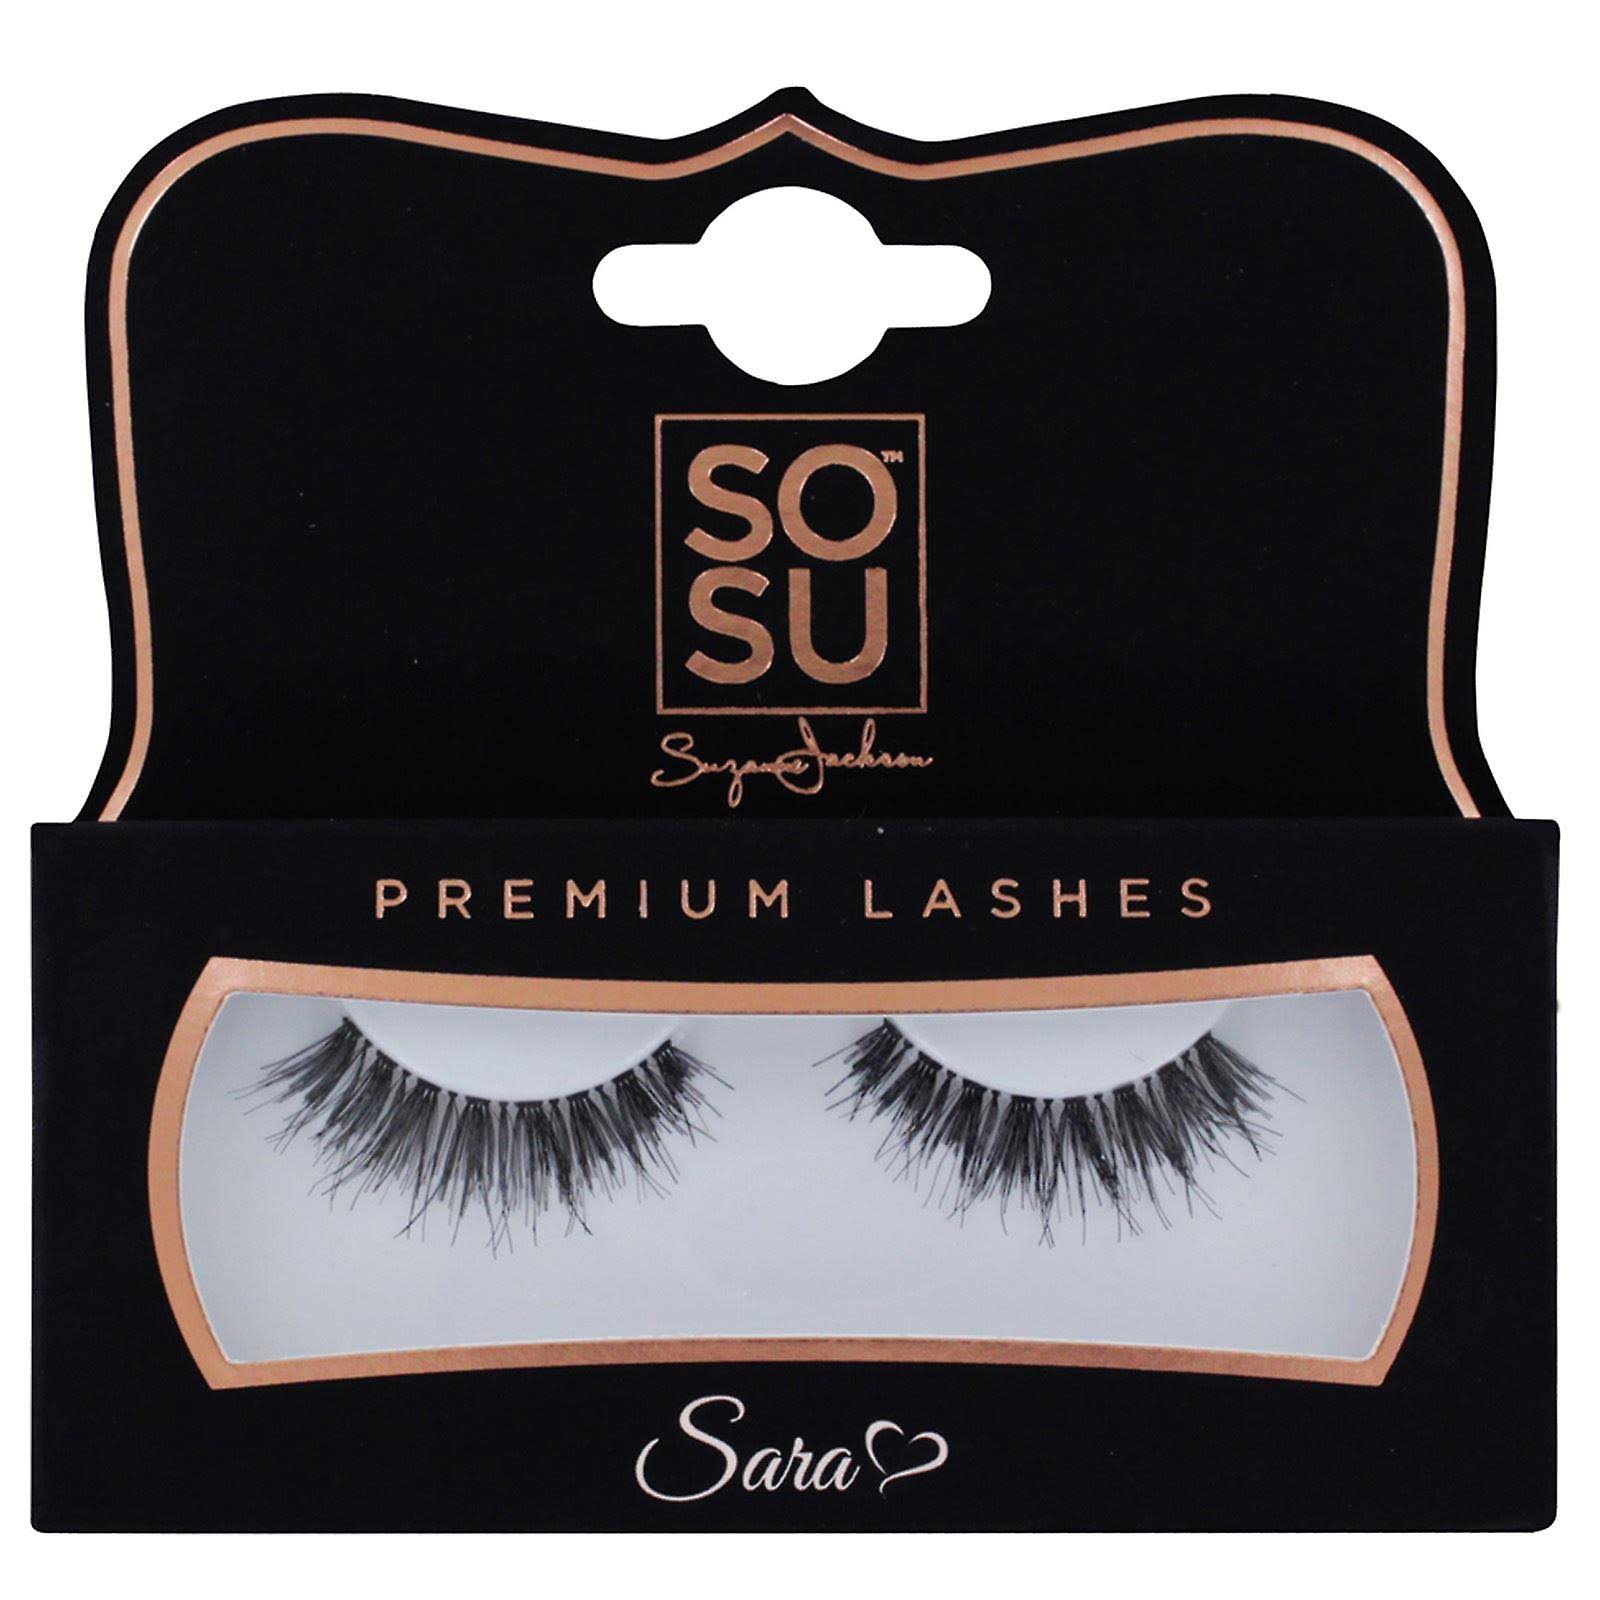 SOSU Premium Lashes - Sara - False Eyelashes